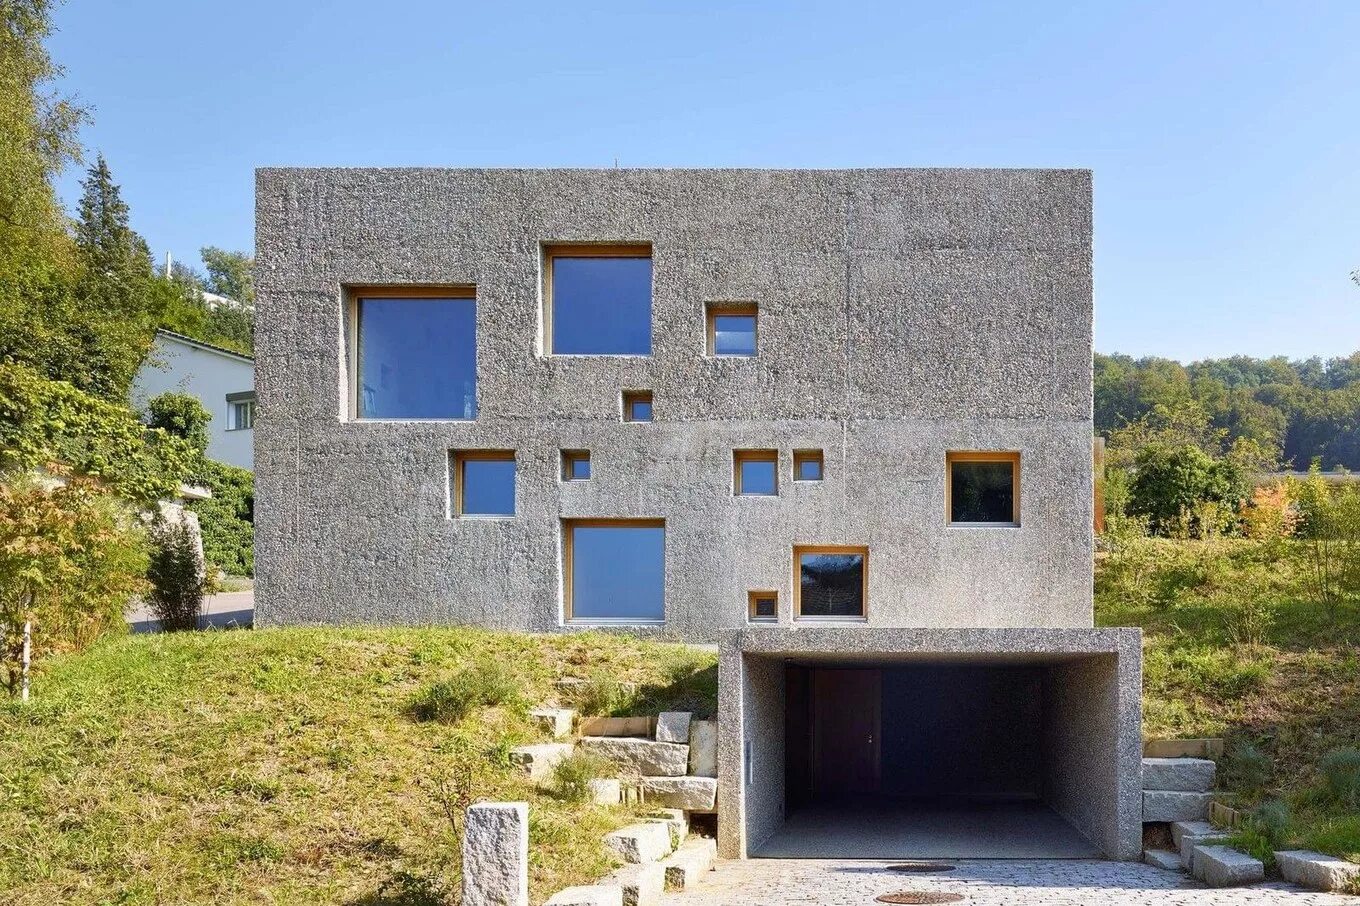 Построить дом из бетона. Бетонный дом (Concrete House) Марии Кастелло и Хосе Антонио Молина. Дом железобетонный монолит. Монолитный бетонный дом. Дом из бетона.